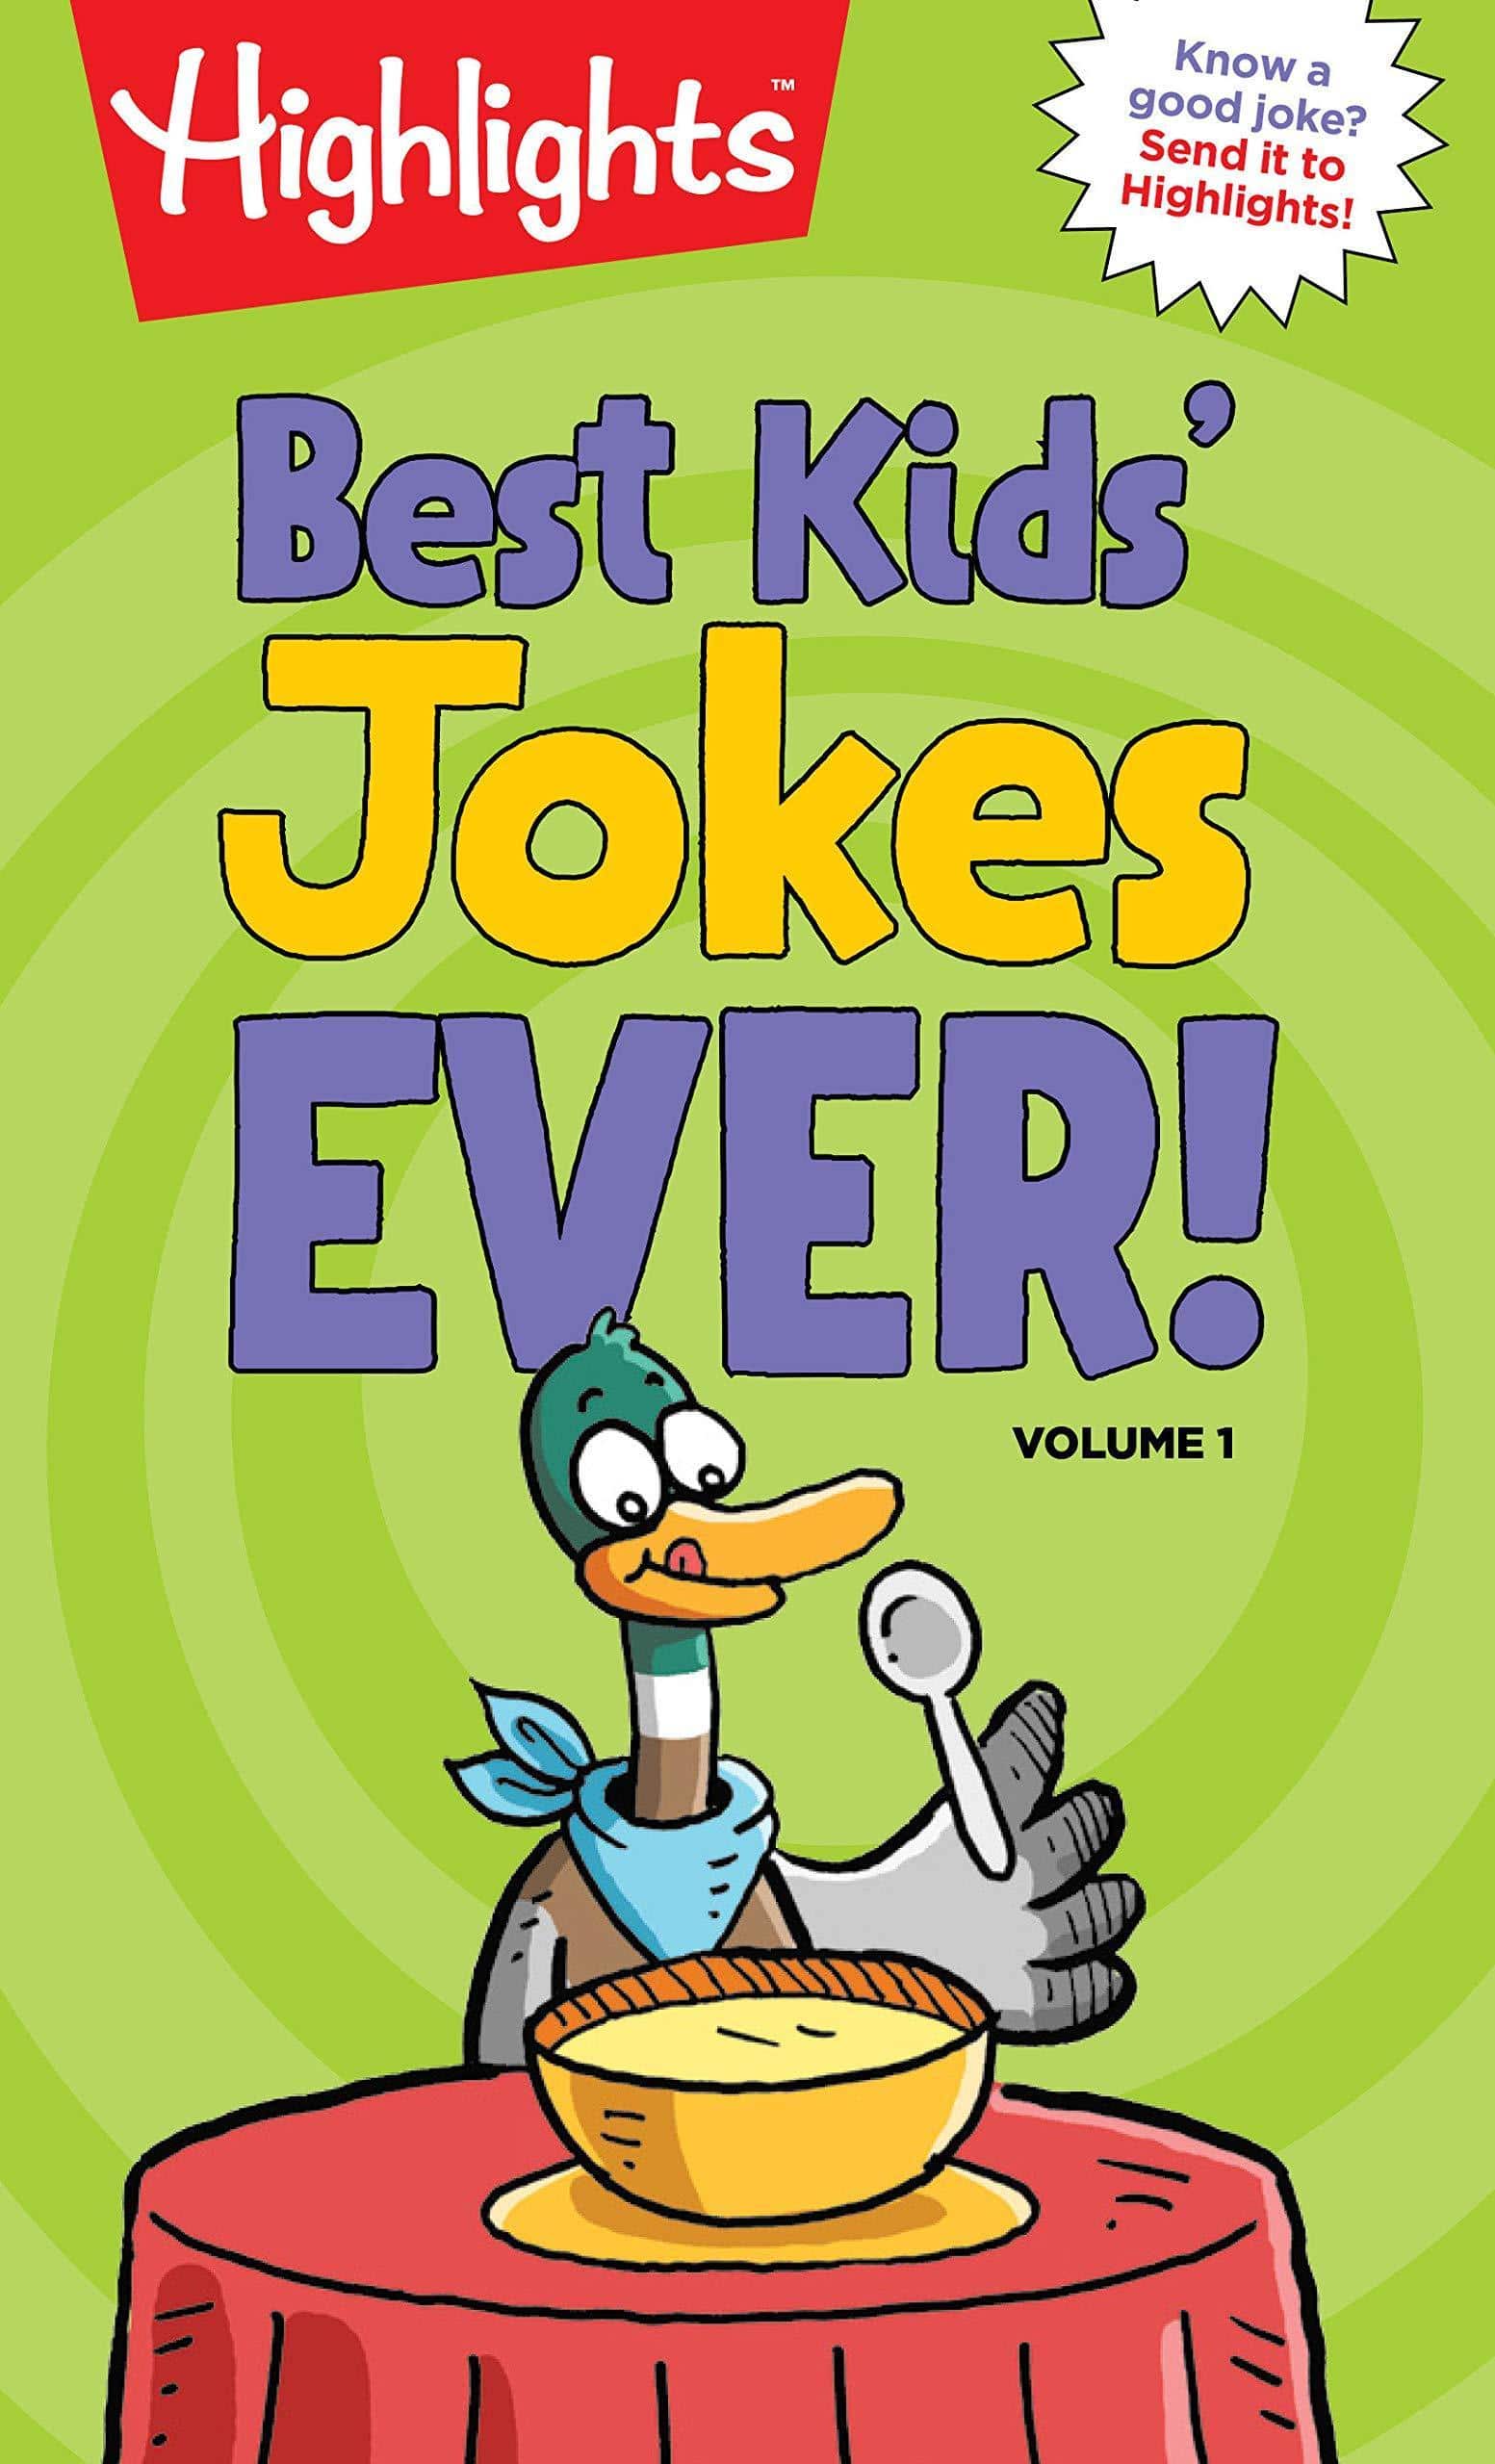 Best Kids' Jokes Ever!, Volume 1 - SureShot Books Publishing LLC